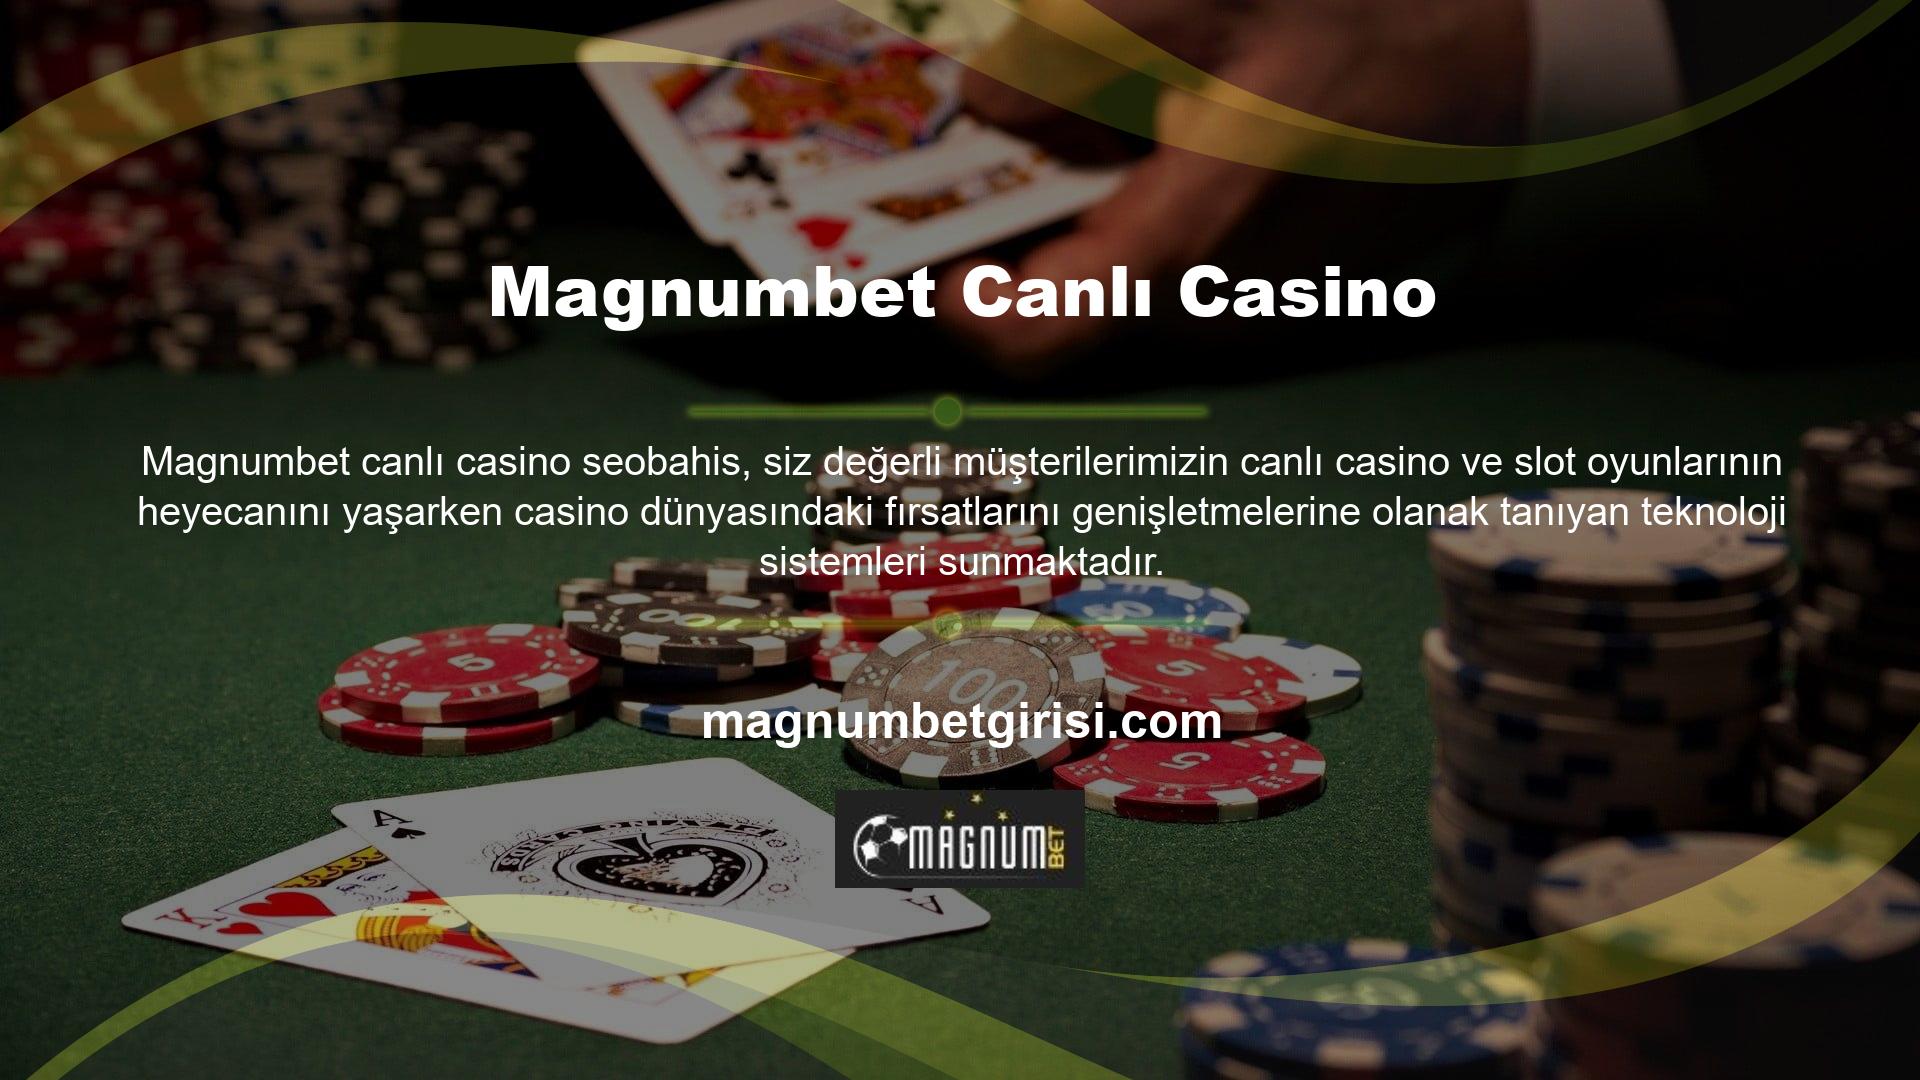 Magnumbet canlı casinoları genellikle teknik bir ekip tarafından yönetiliyordu ancak site adresine ulaşılamaması durumunda hazır altyapı da sağlandı